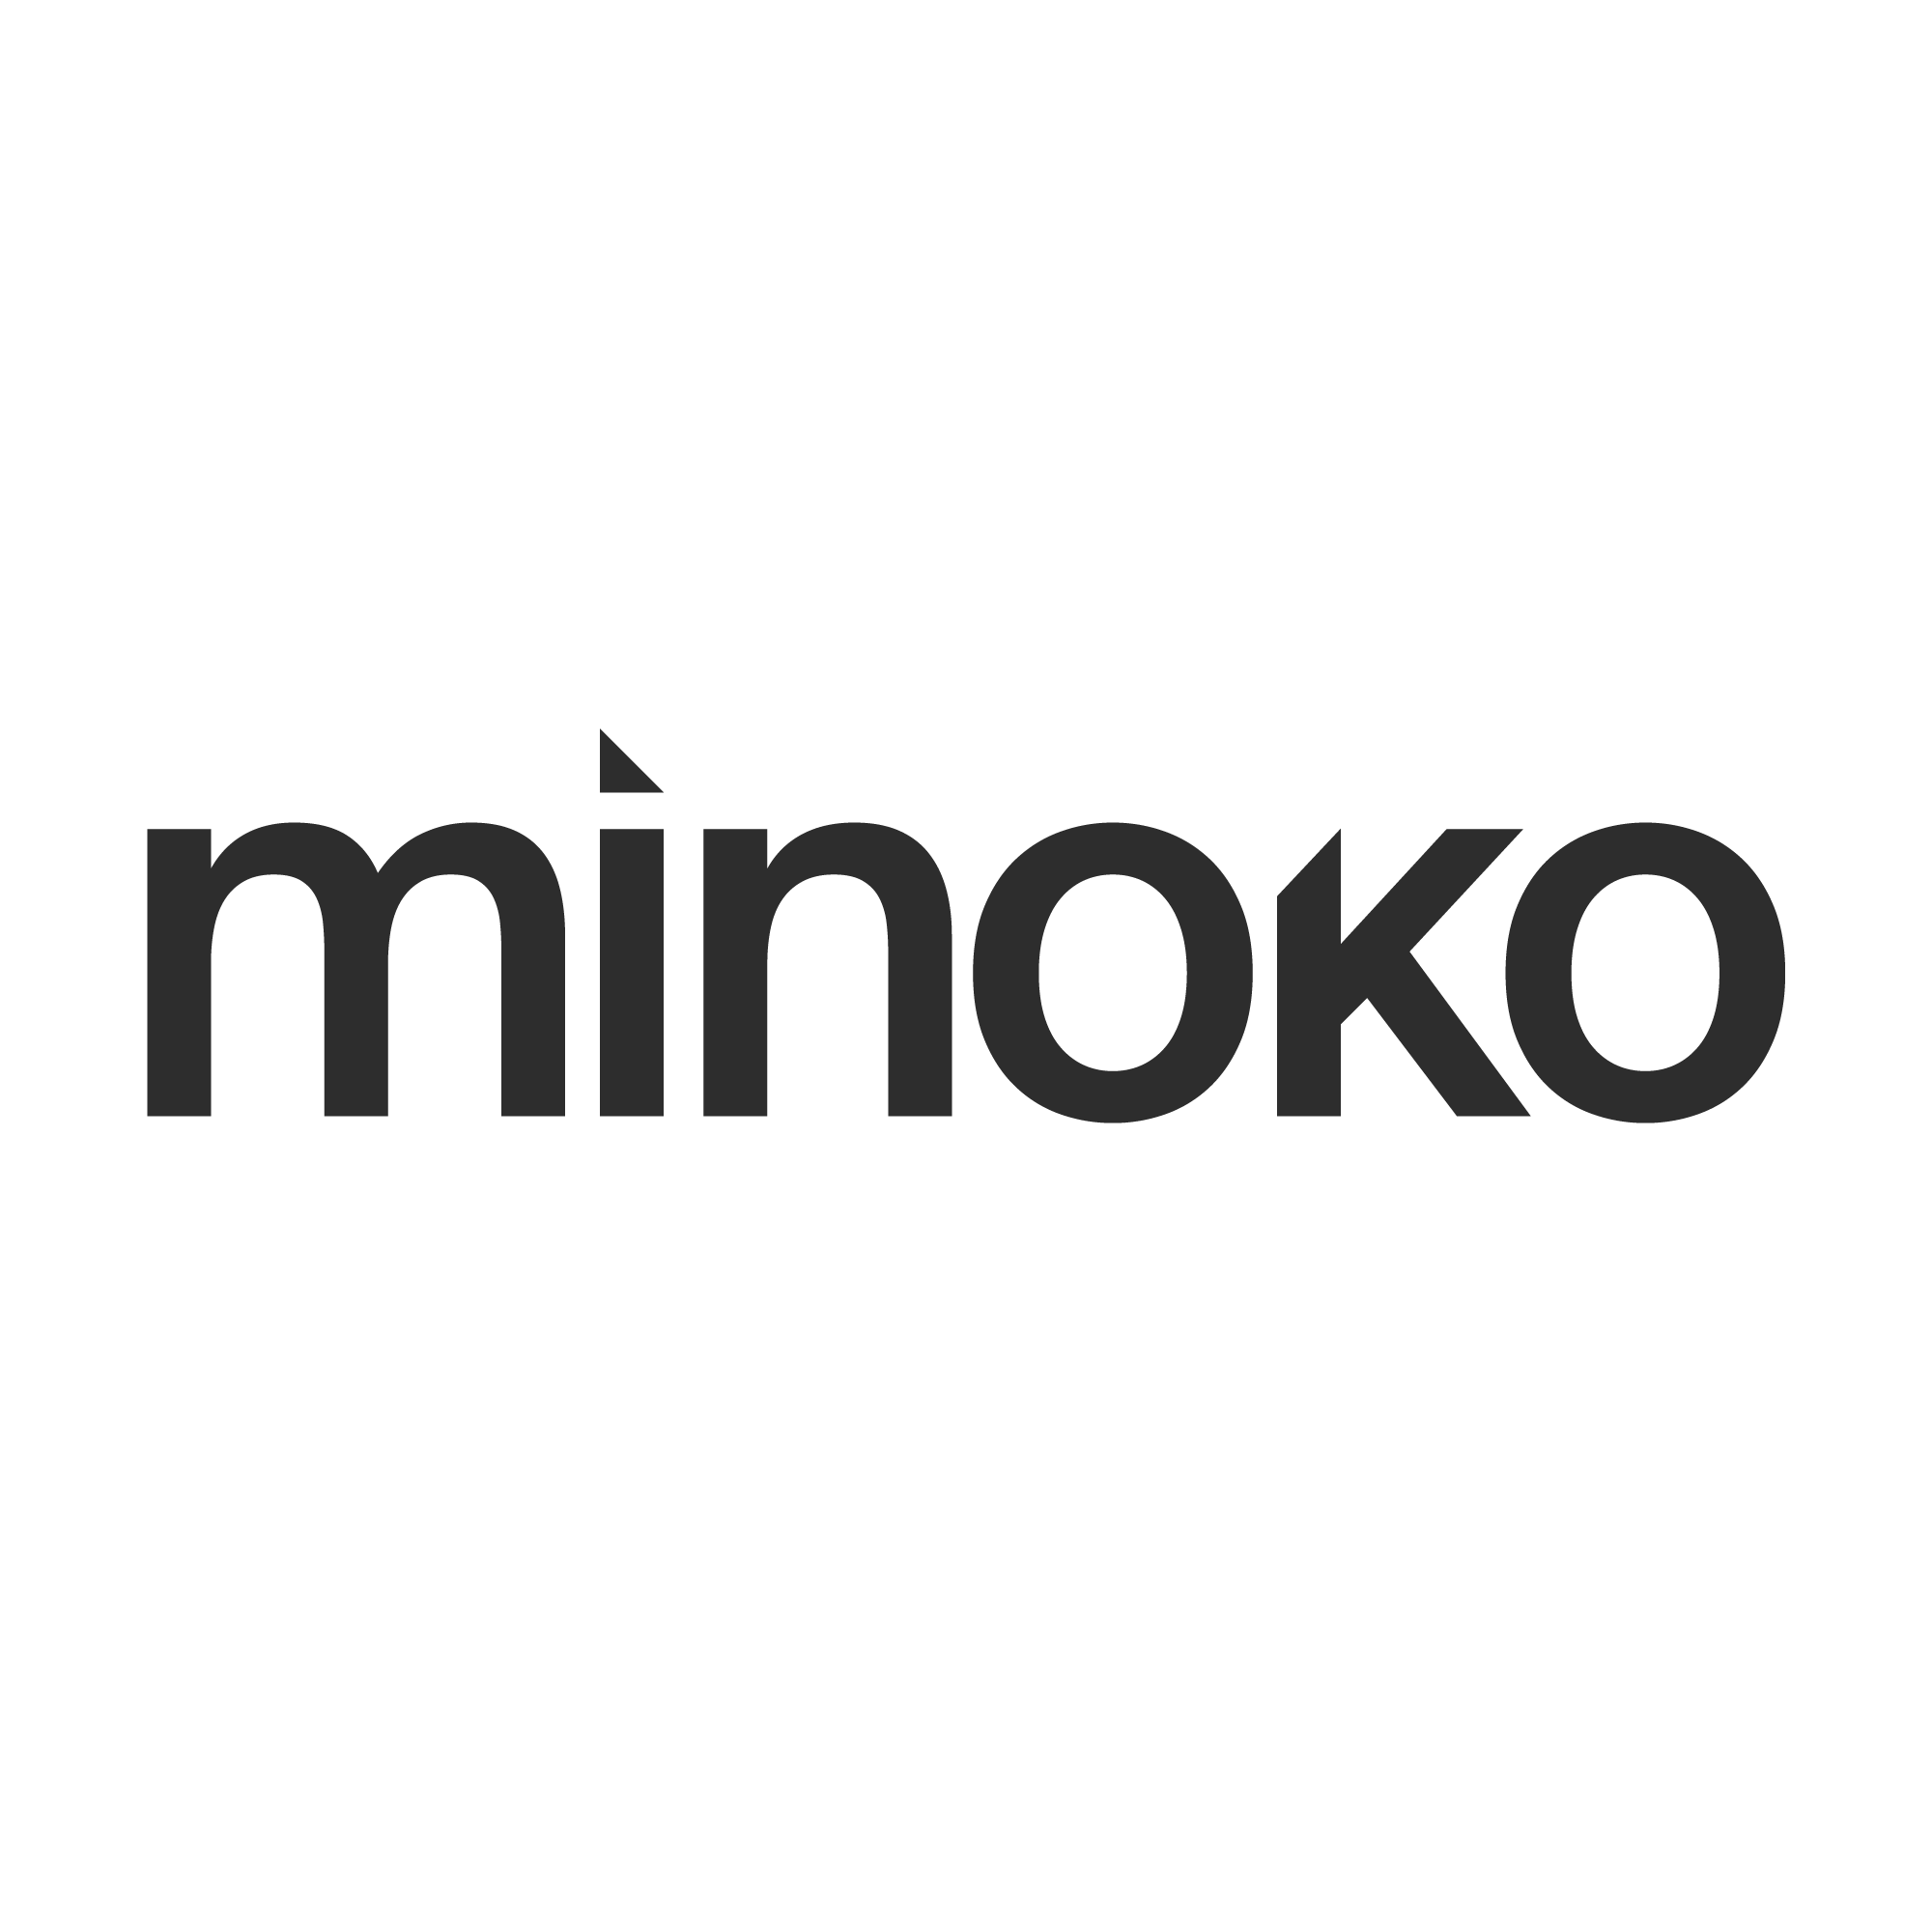 Minoko Design